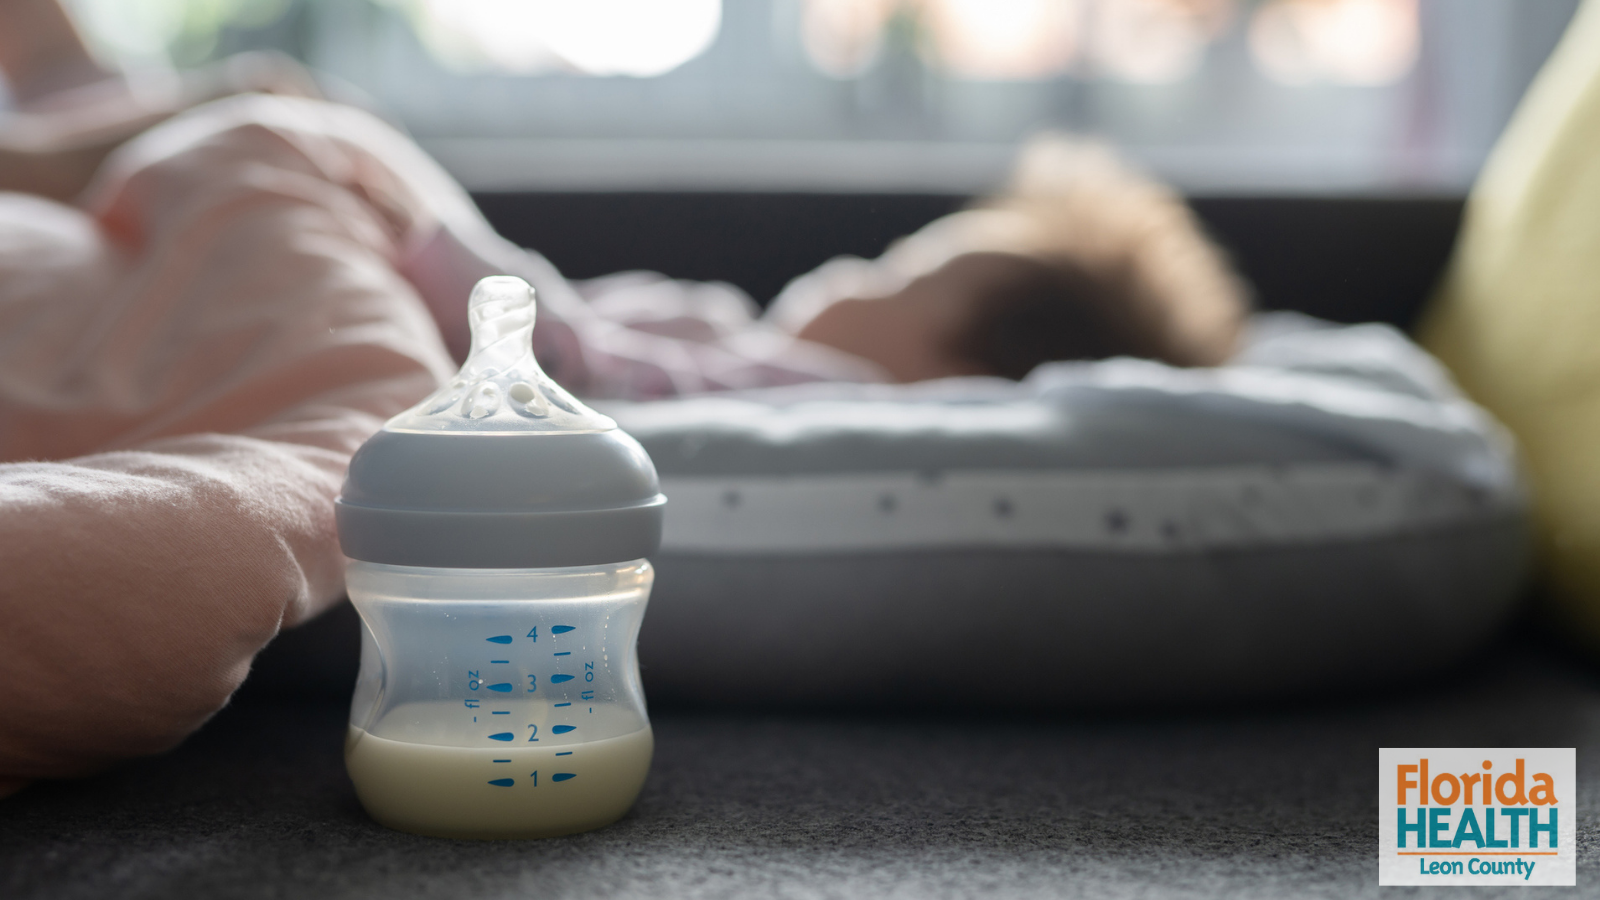 DOH Leon Provides Update on Current National Infant Formula Shortage